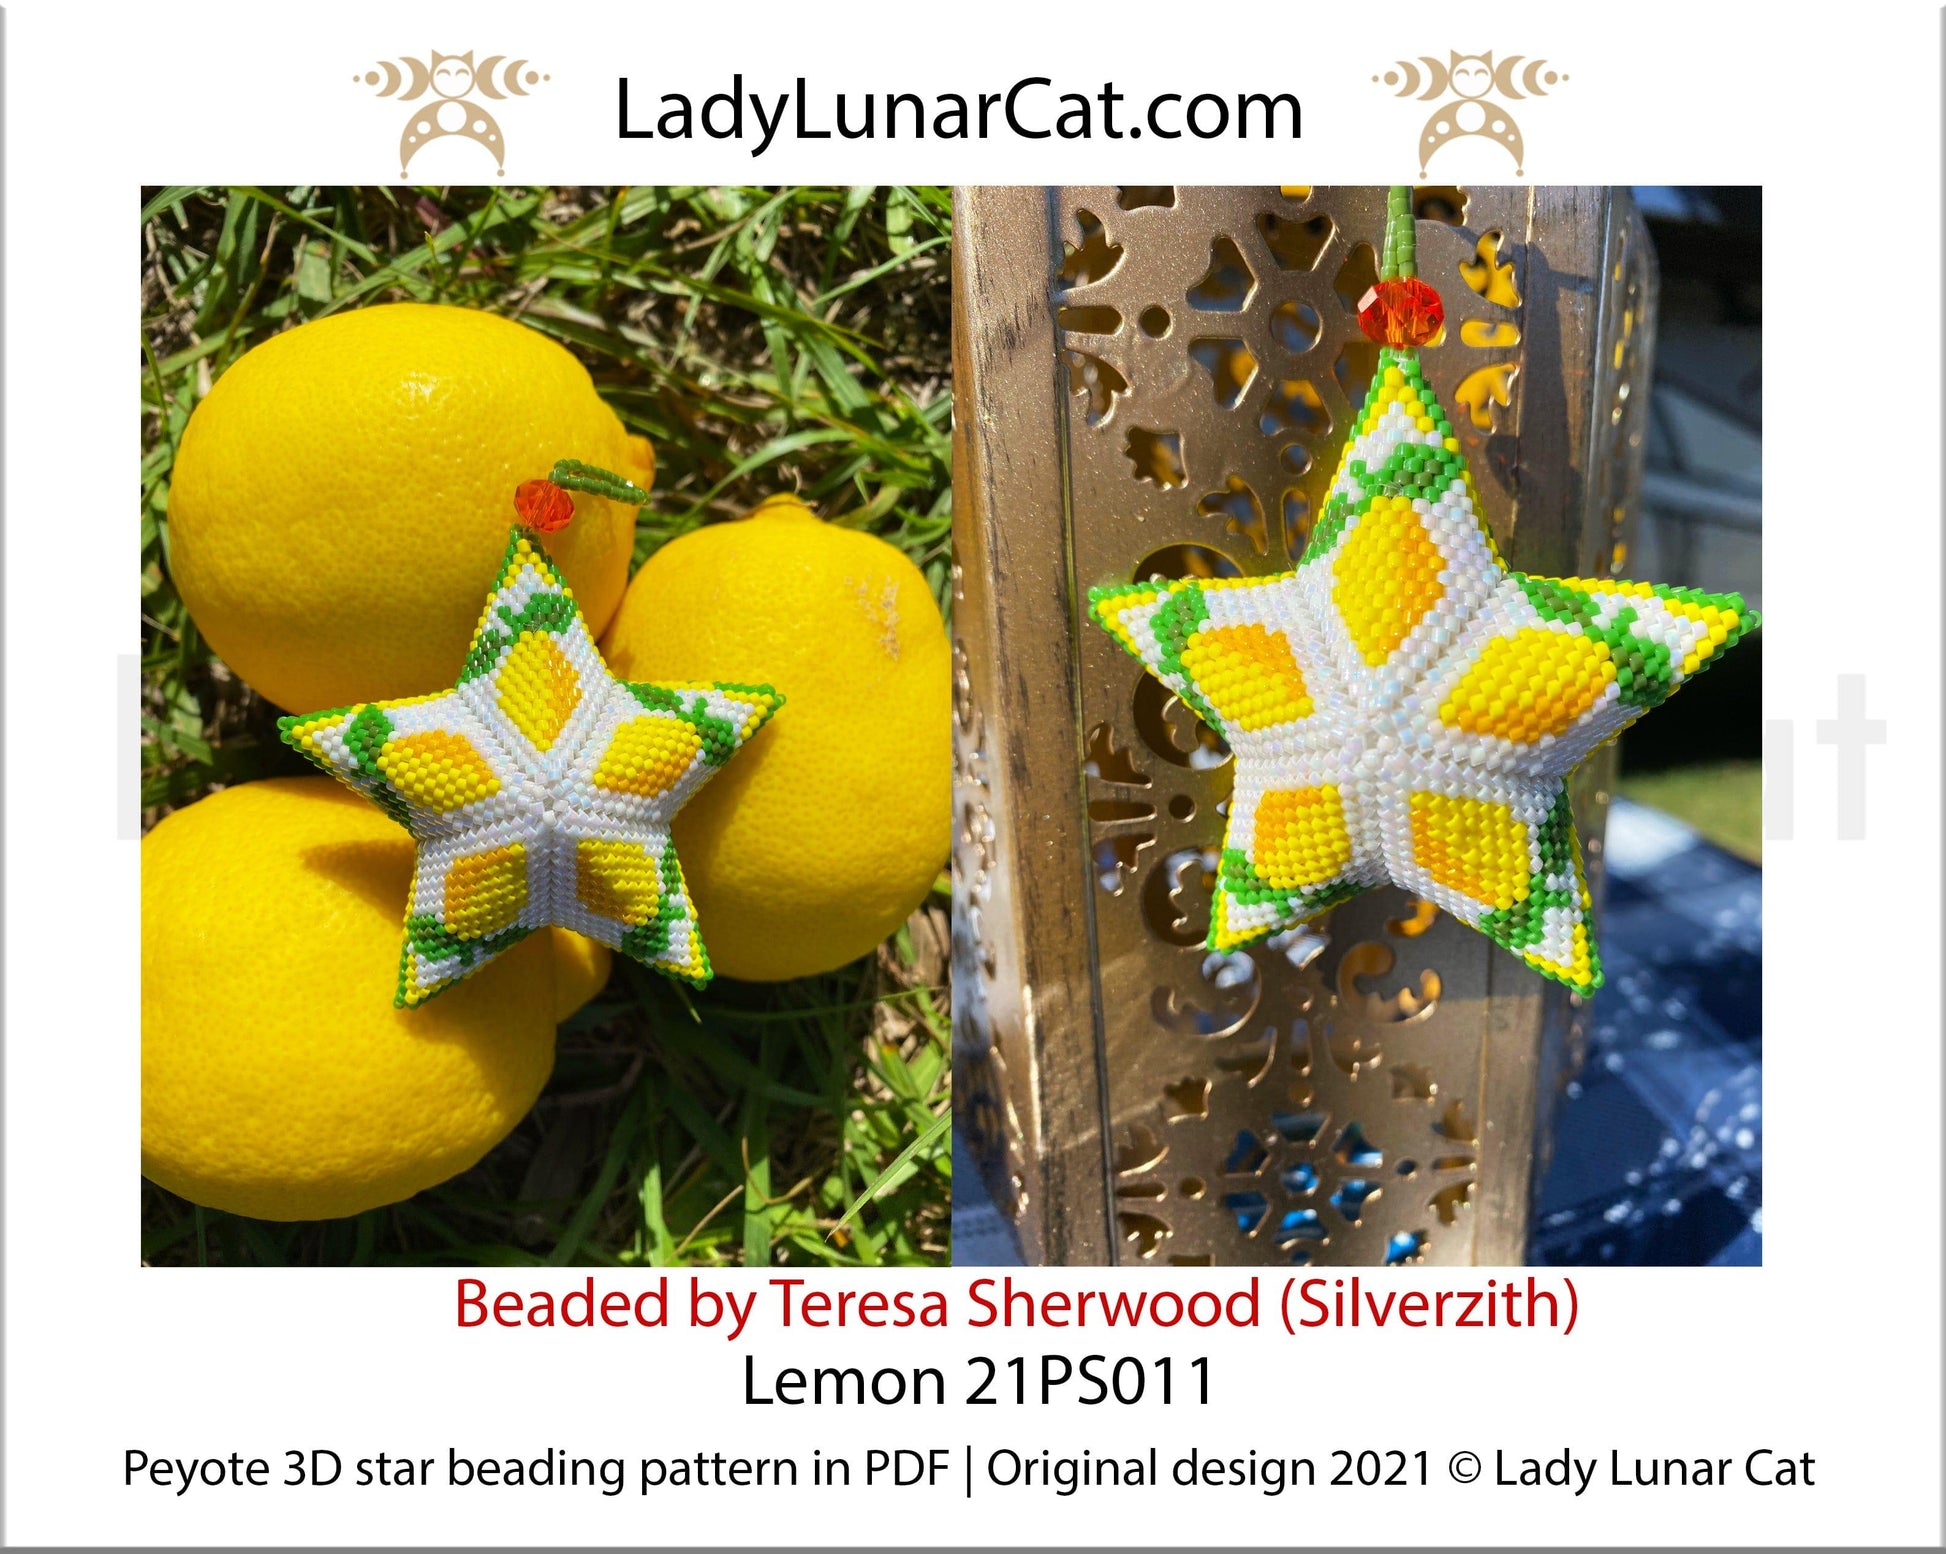 Beaded star pattern - Lemon 21PS011 | Seed beads tutorial for 3D peyote star LadyLunarCat